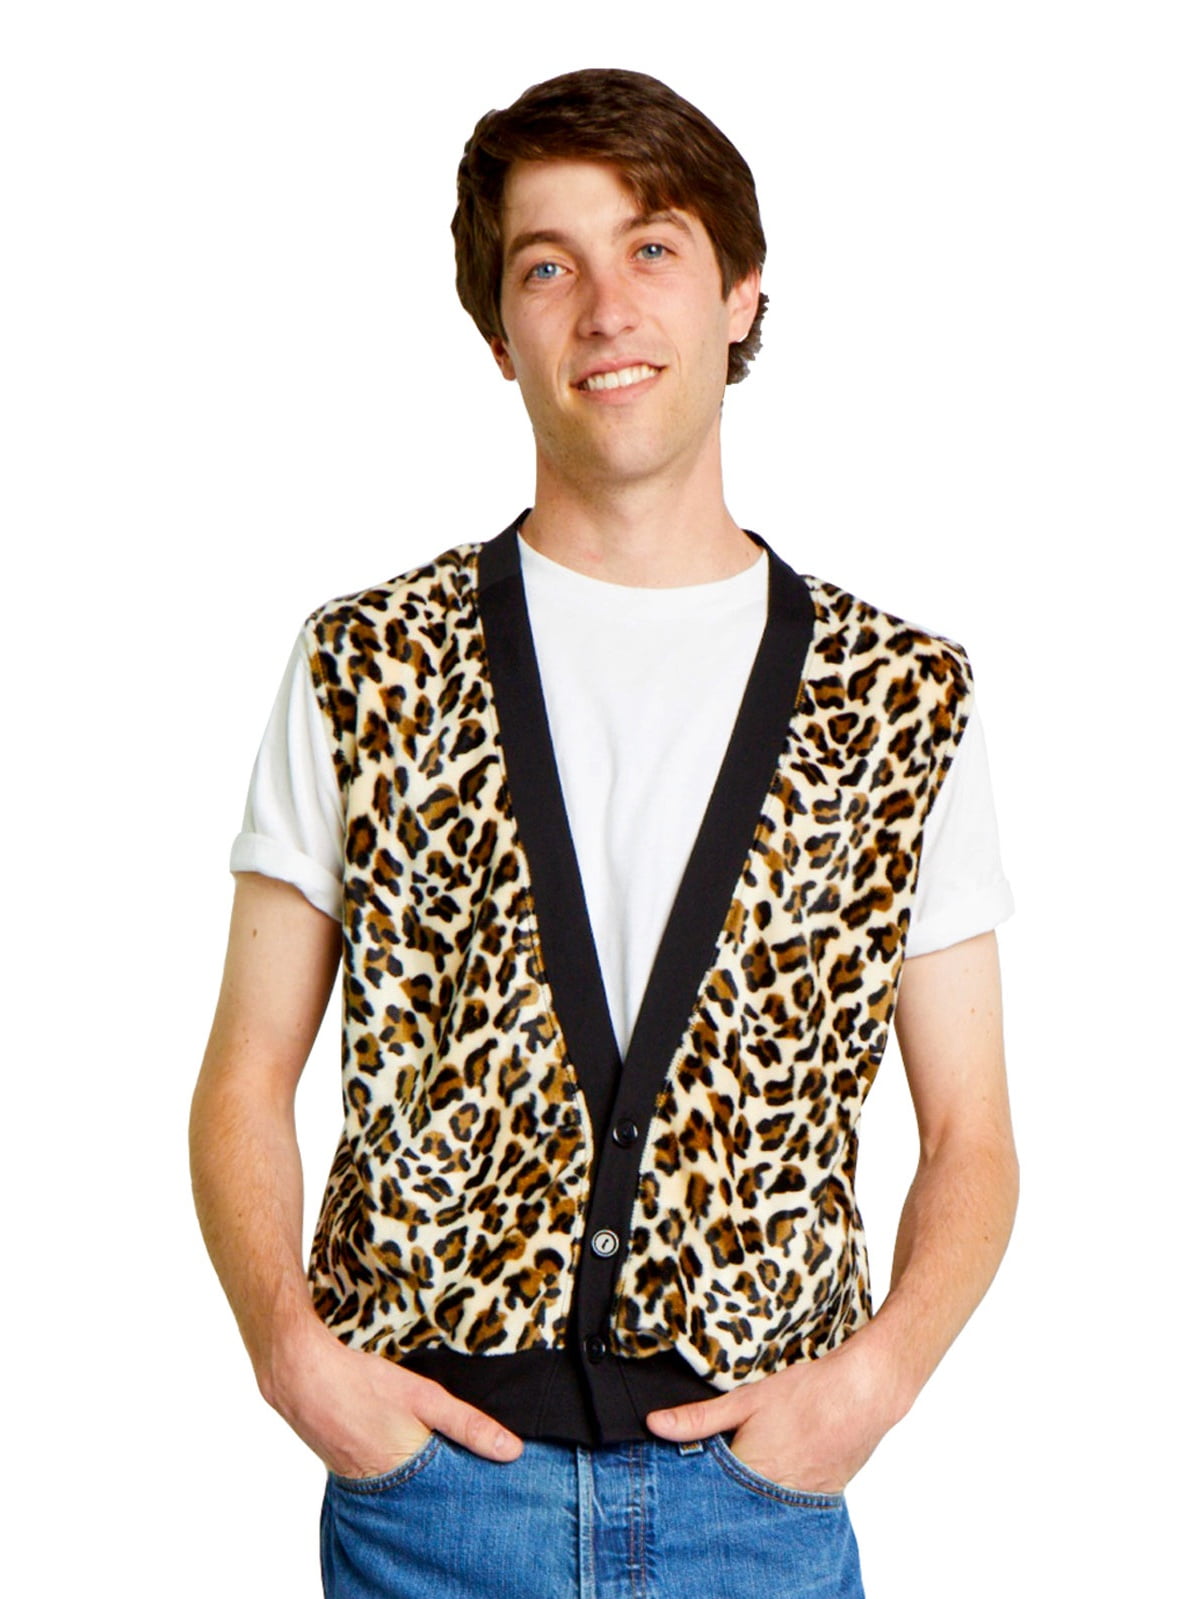 Cheetah Print Vest Small - Walmart.com